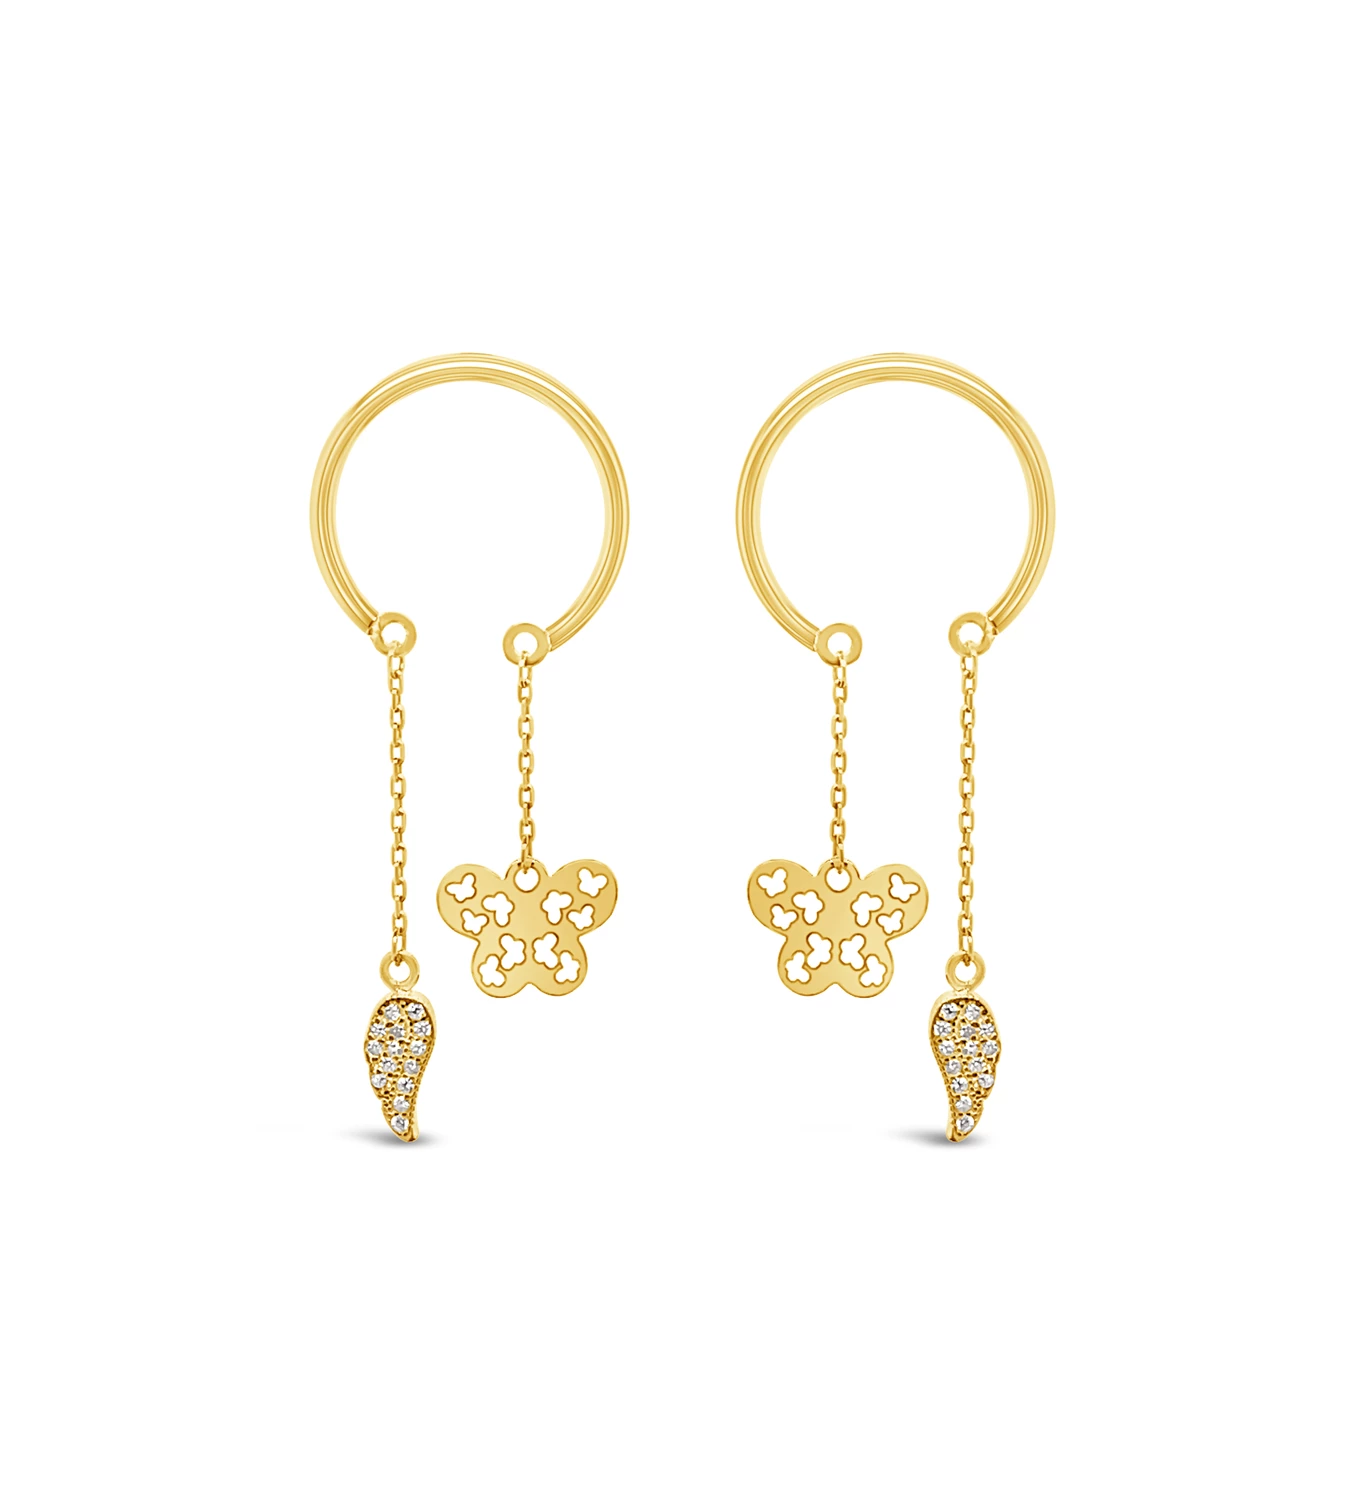 Butterfly Rings gold earrings